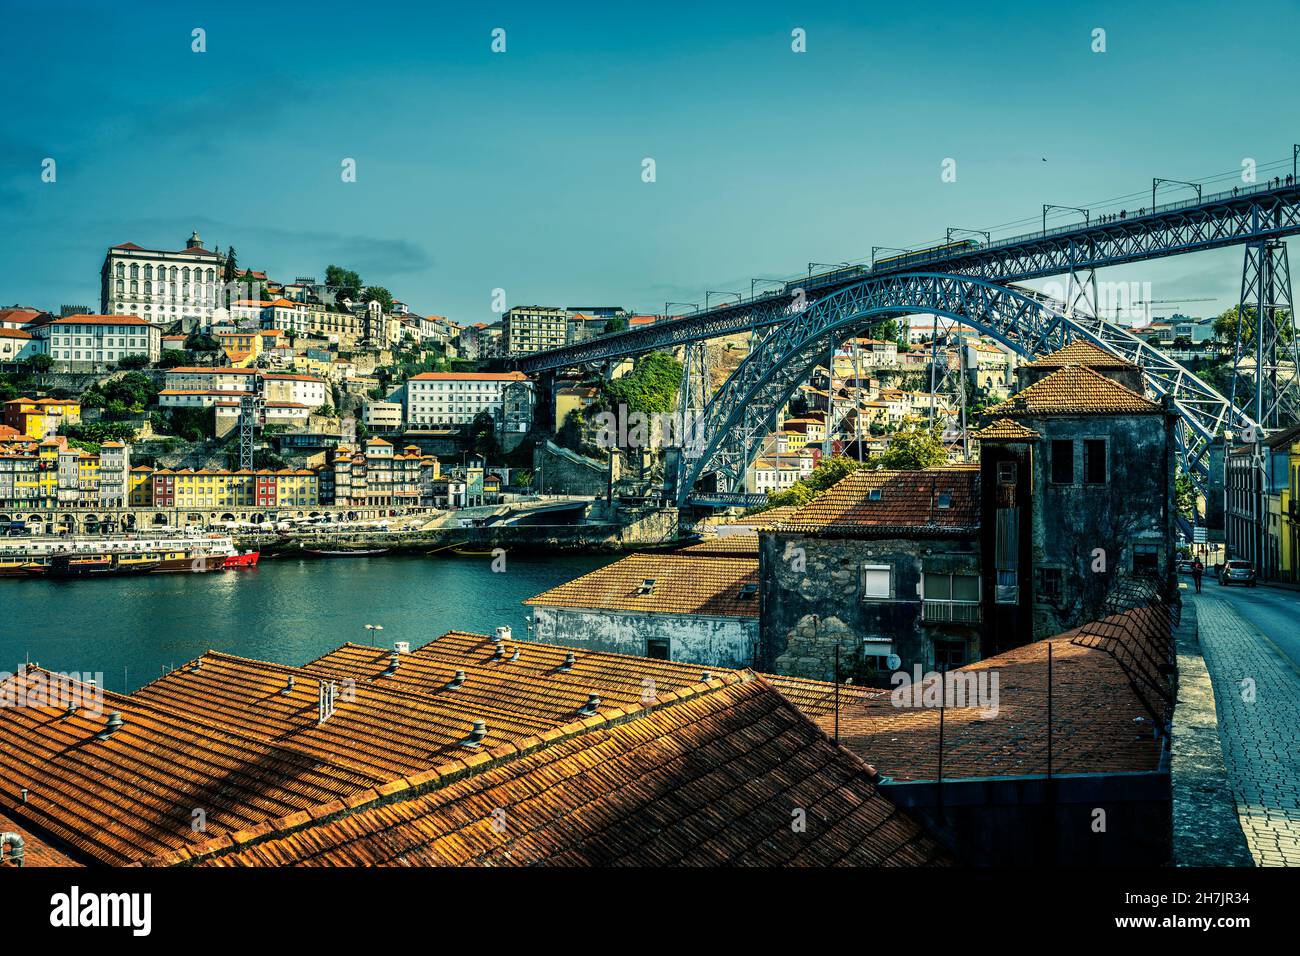 View of famous bridge in Porto, Portugal Stock Photo